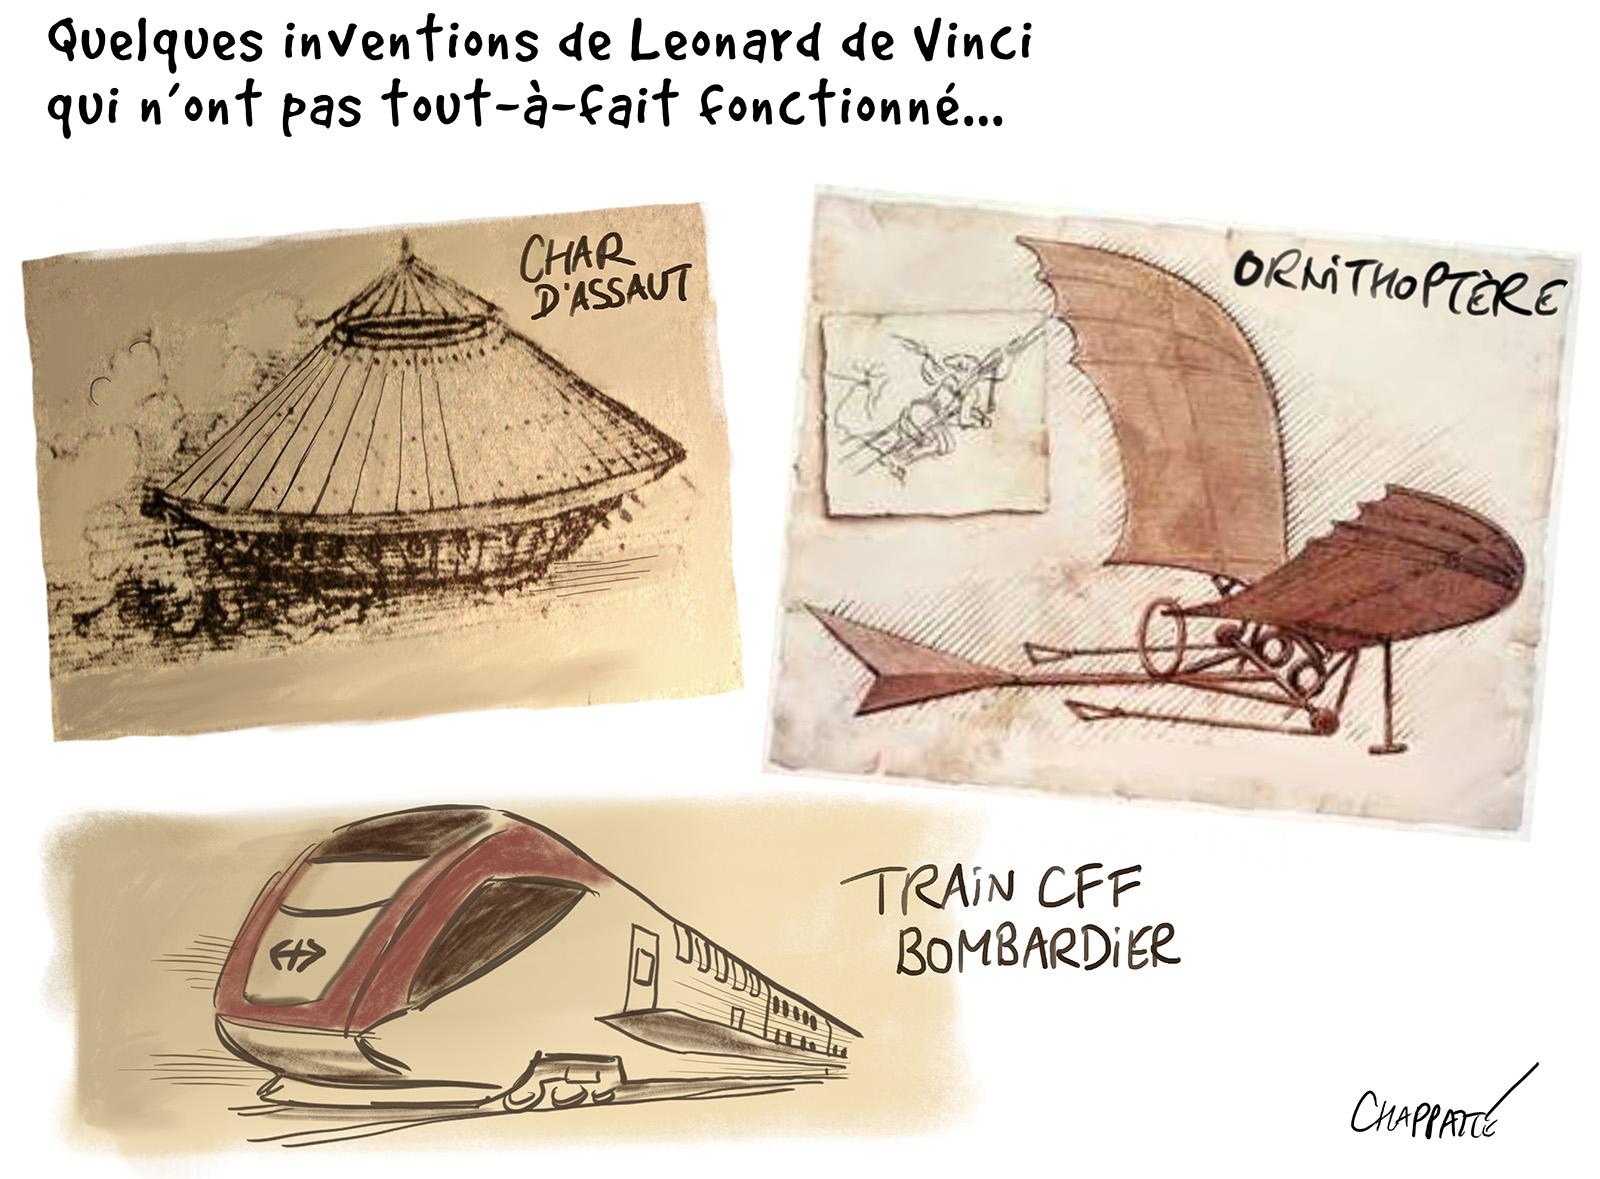 500 ans après Vinci